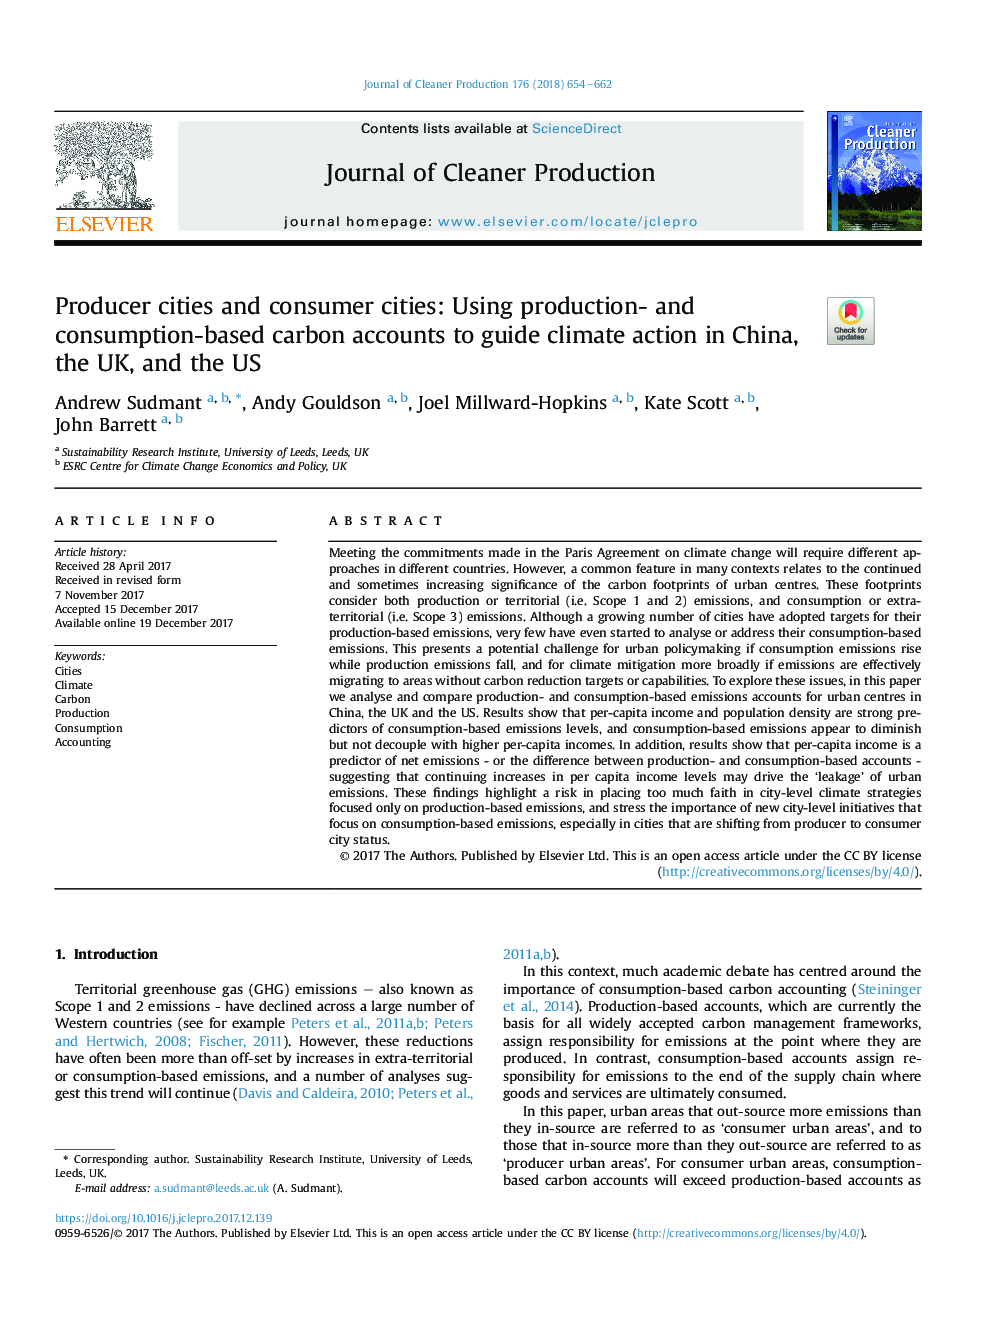 شهرهای تولید کننده و شهرهای مصرف کننده: با استفاده از حسابهای کربن تولید و مصرف مبتنی بر هدایت اقدامات اقلیمی در چین، انگلستان و ایالات متحده آمریکا 